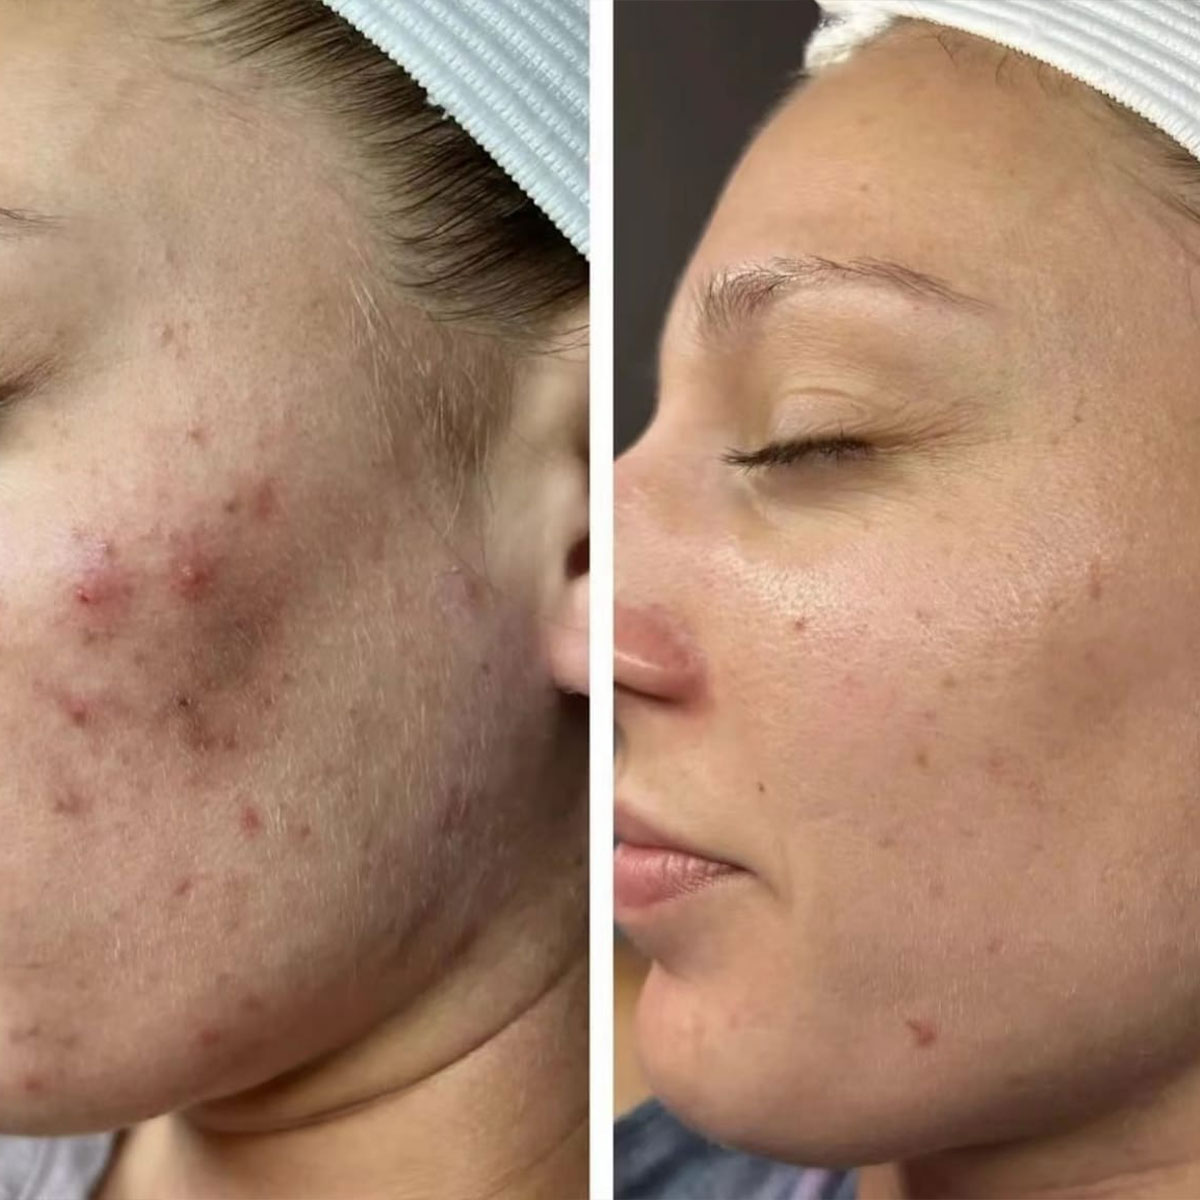 Ministry of Beauty - Co 2 Laserbehandlung gegen Akne Narben - Glatte Haut - Selbstvertrauen